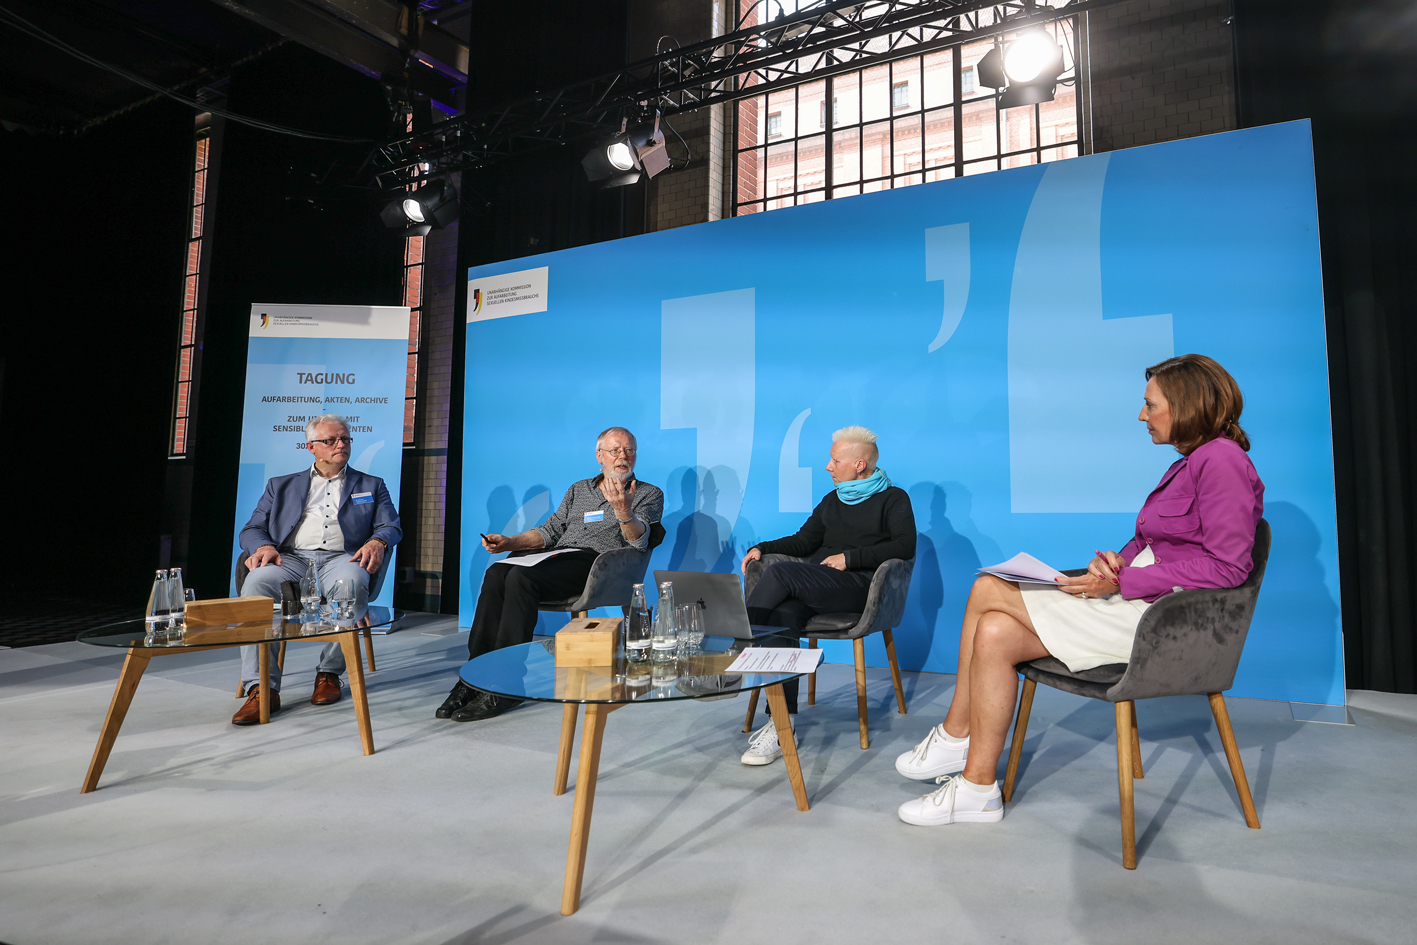 Vier Personen sitzen im Halbkreis auf einer Bühne und sprechen miteinander. Von links nach rechts sind das Johannes Kistenich-Zerfaß, Heiner Keupp, Angela Marquardt und die Moderatorin Juliane Hielscher.